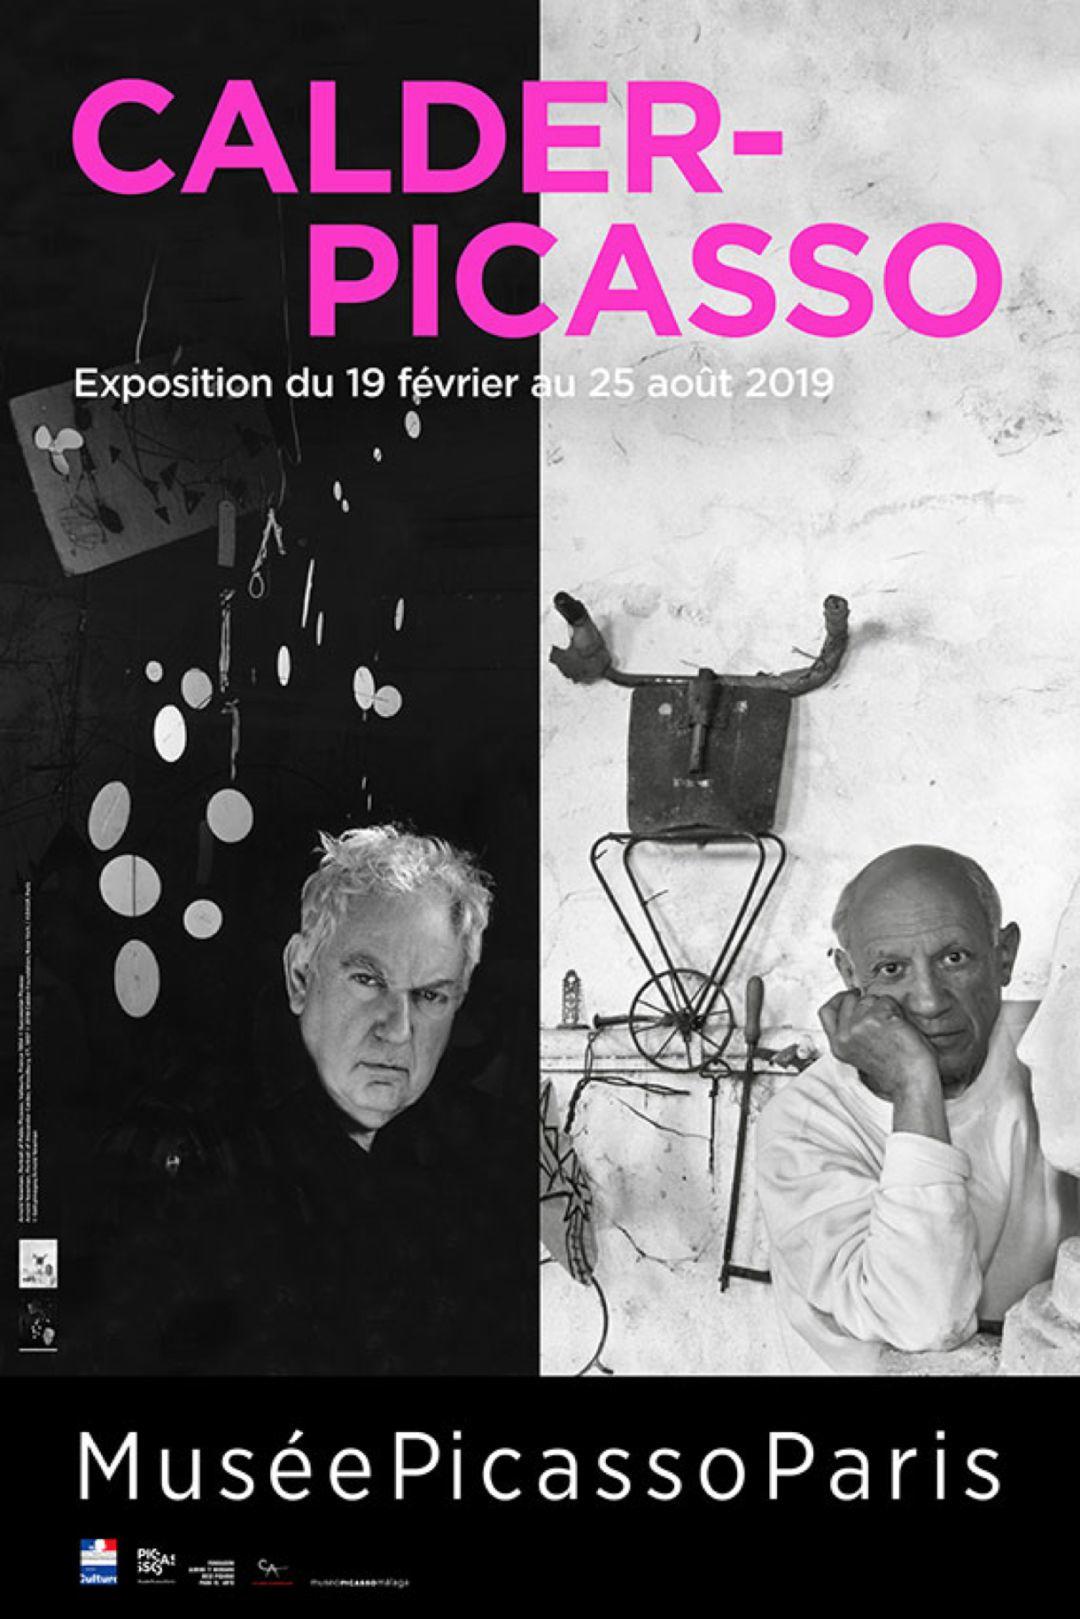 毕加索限时展 | 独行的灵魂与“美国毕加索”的碰撞